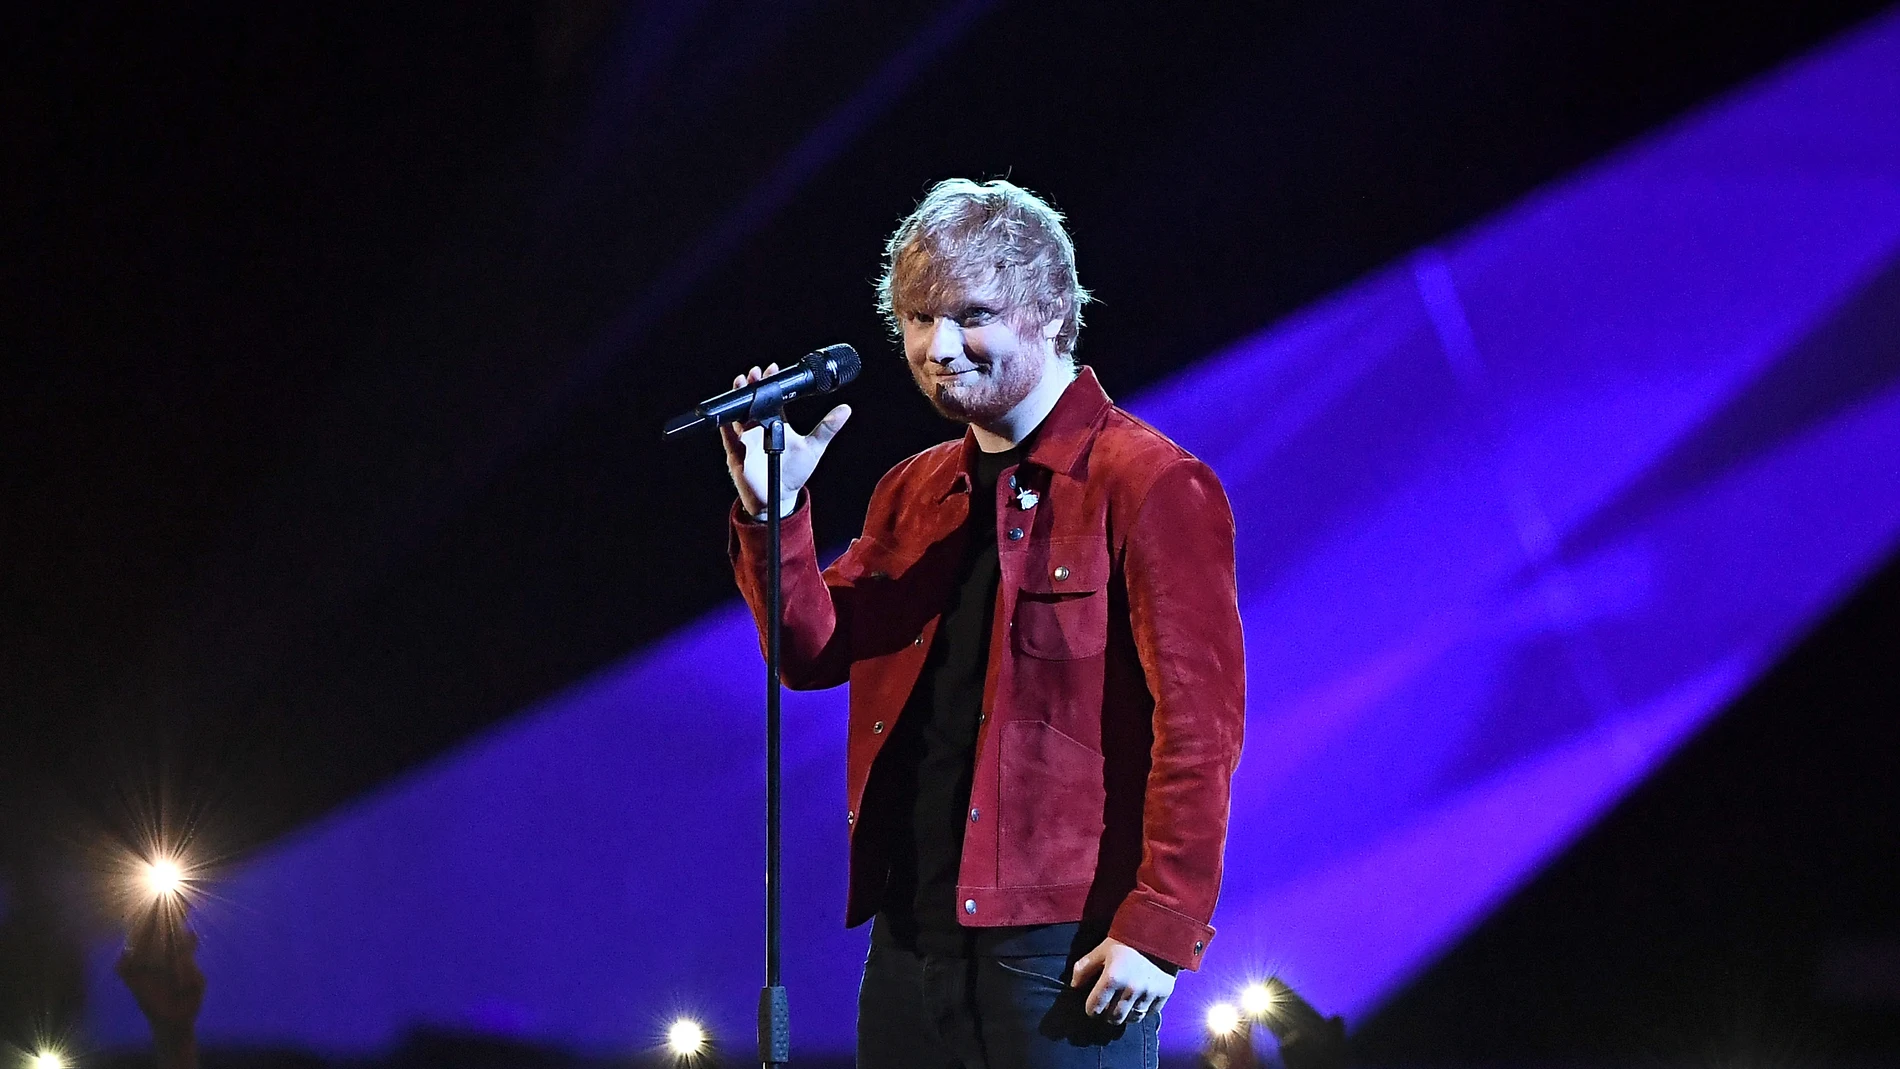 El lado compositor de Ed Sheeran: siete canciones de éxito que ha escrito para otros artistas